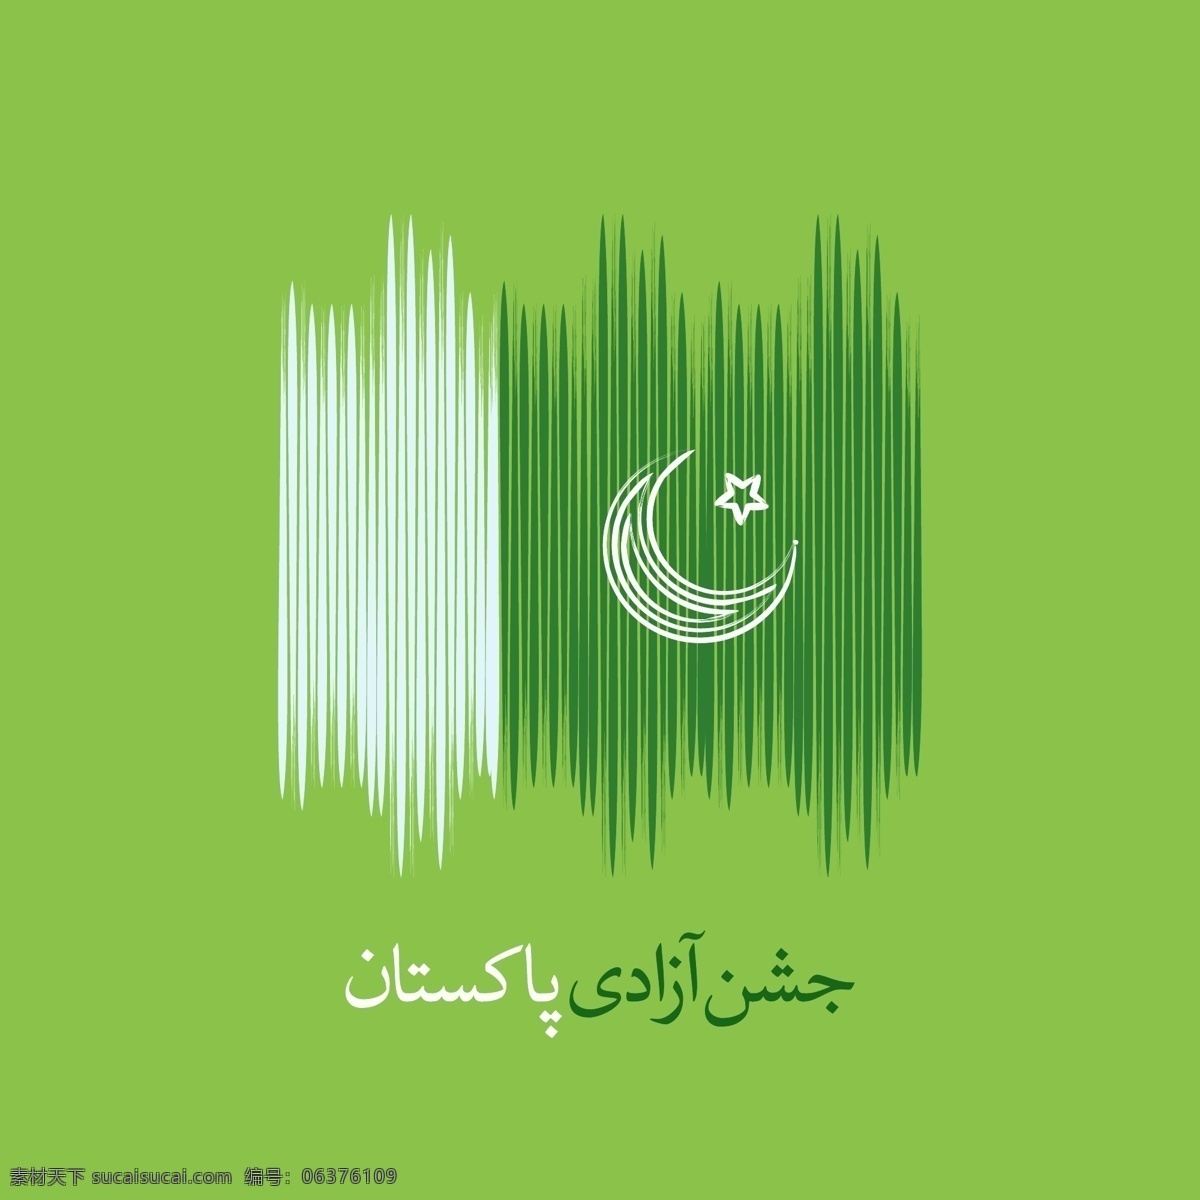 巴基斯坦 国旗 独立日 背景 抽象 风格 巴基斯坦国旗 独立日背景 抽象背景 绿色